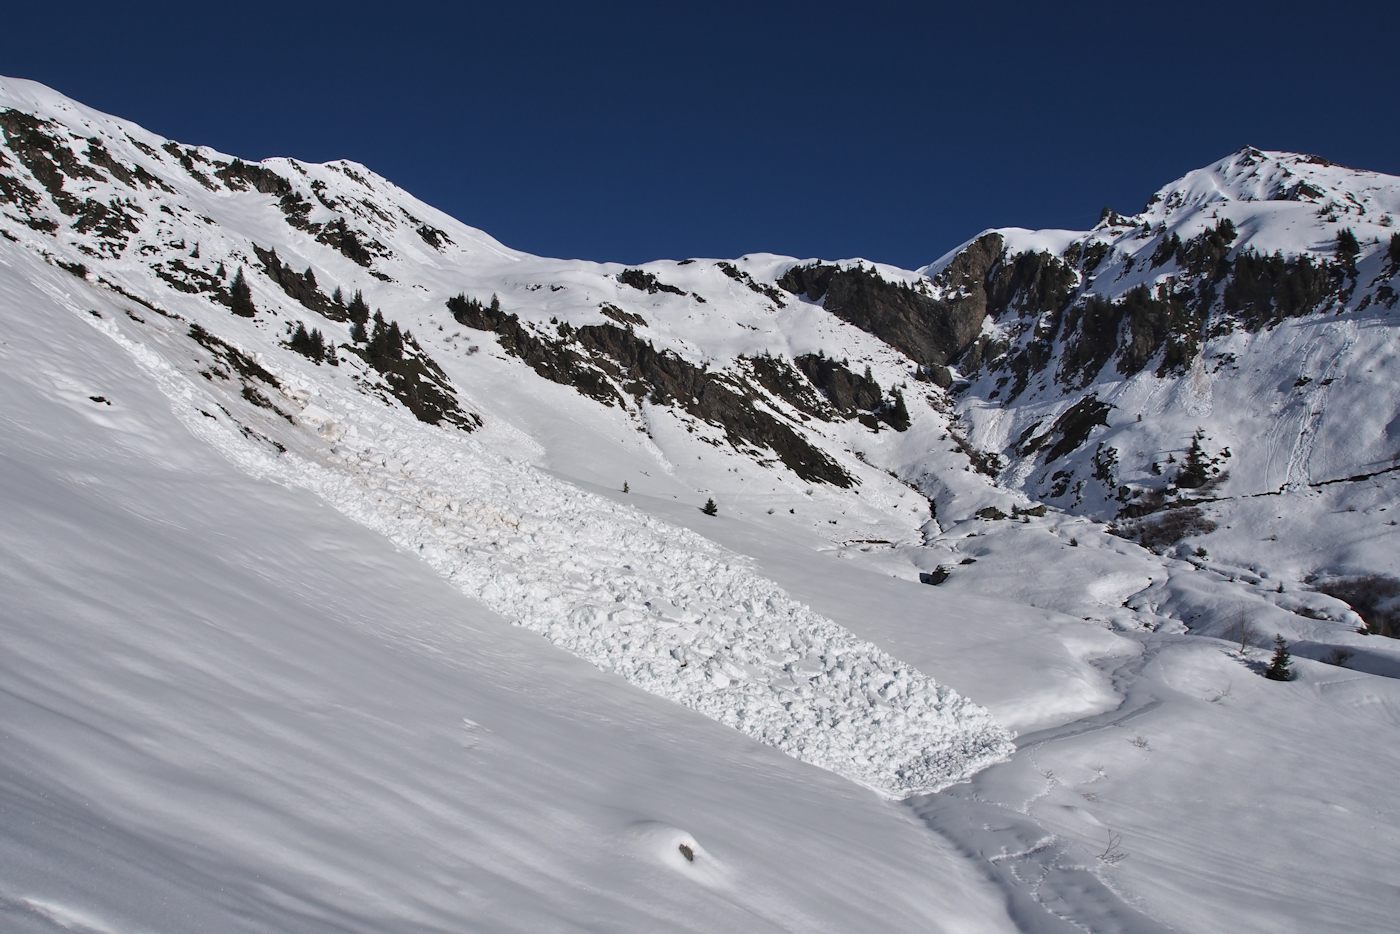 Arrivée à la route vers 1800 m : Une des avalanches du secteur.